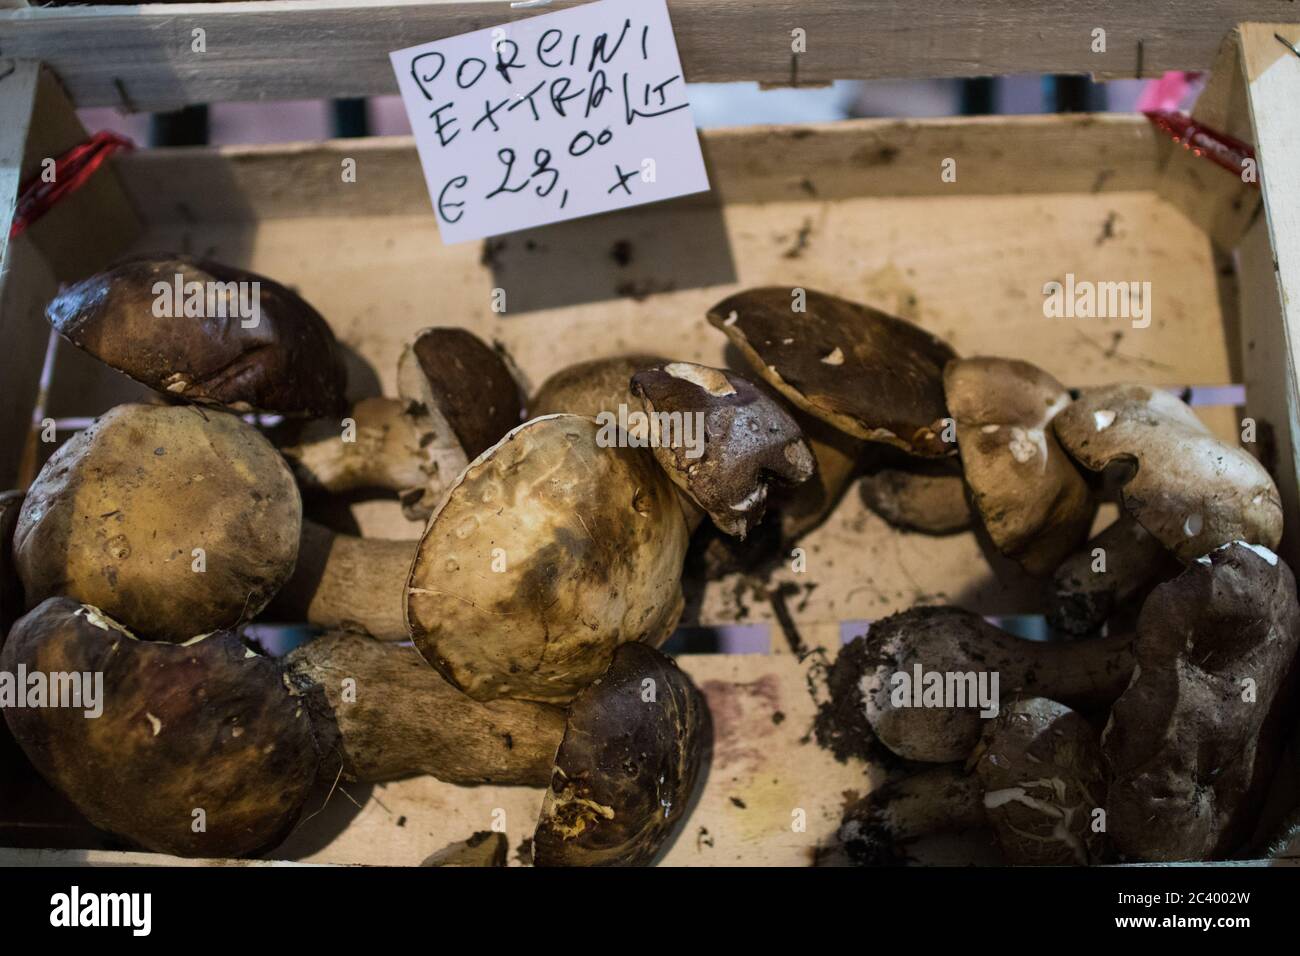 Una cassa di funghi porcini al mercato locale di una storica città italiana. Funghi porcini freschi con il prezzo indicato Foto Stock